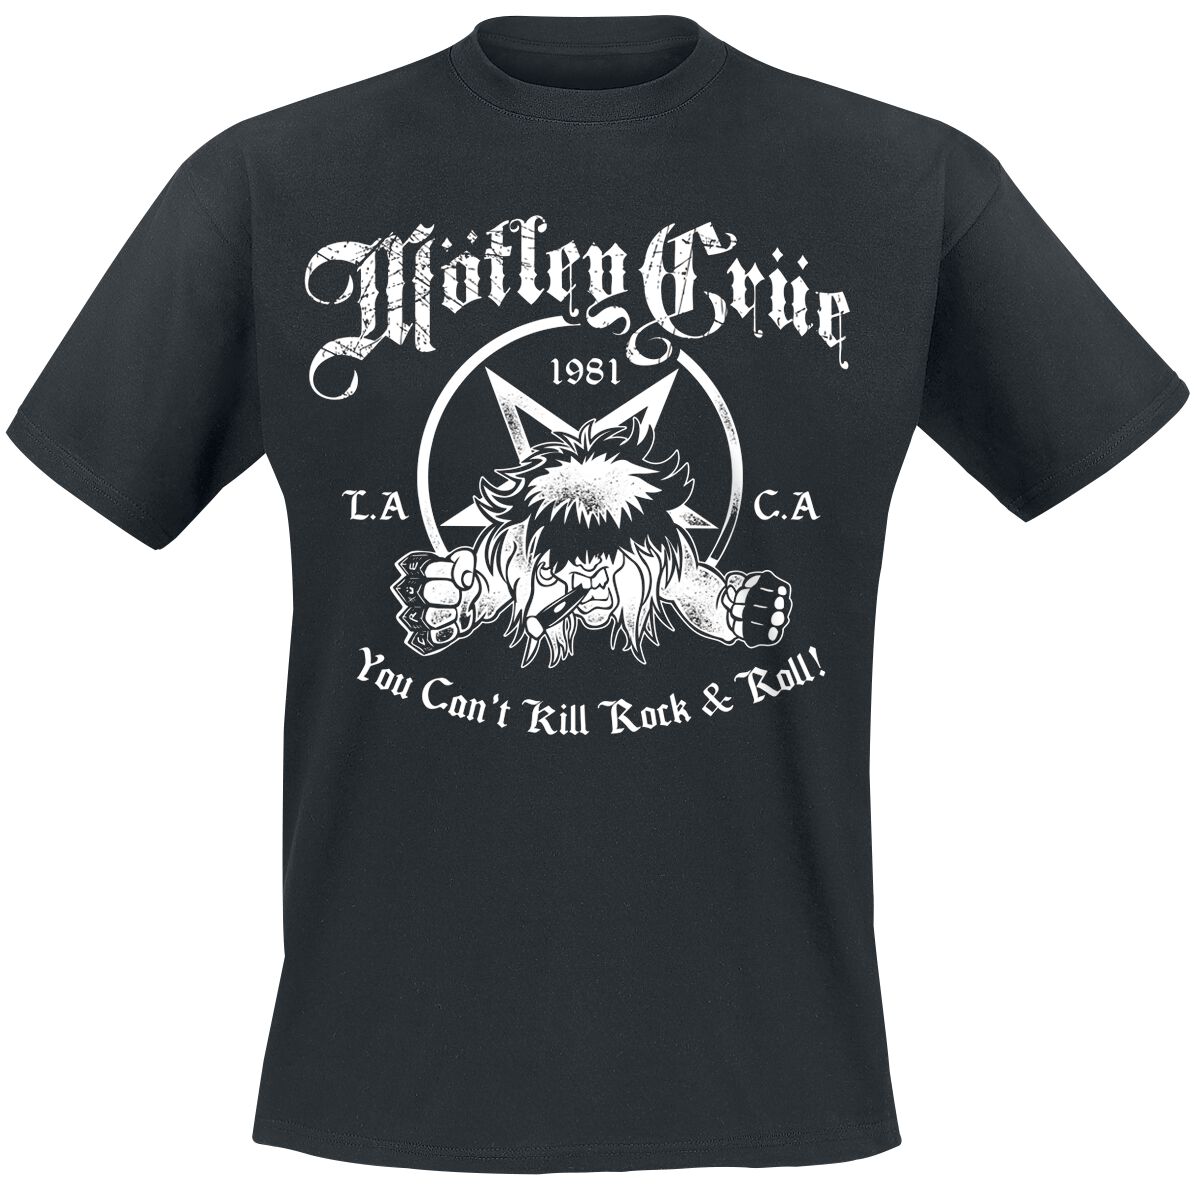 Mötley Crüe T-Shirt - You Can`t Kill Rock`n Roll - S bis XXL - für Männer - Größe XXL - schwarz  - Lizenziertes Merchandise!